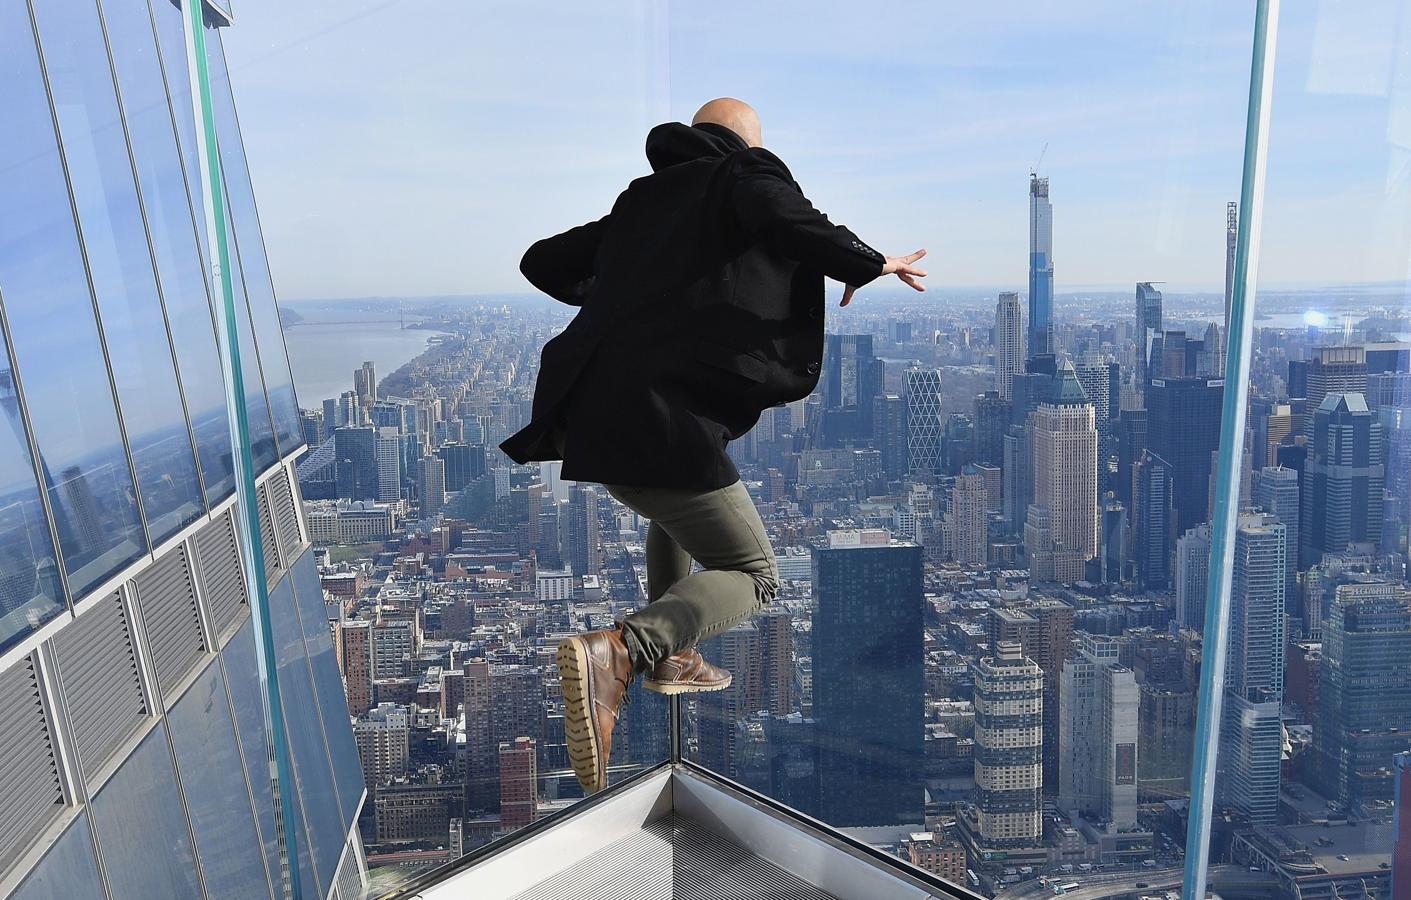 Surf sobre Manhattan. "Edge", un enorme balcón suspendido a 345 metros de altura sobre Manhattan, abrió sus puertas el 11 de marzo con la aspiración de convertirse en la nueva panorámica imprescindible de Nueva York y en medio de cautelas por la crisis del coronavirus.